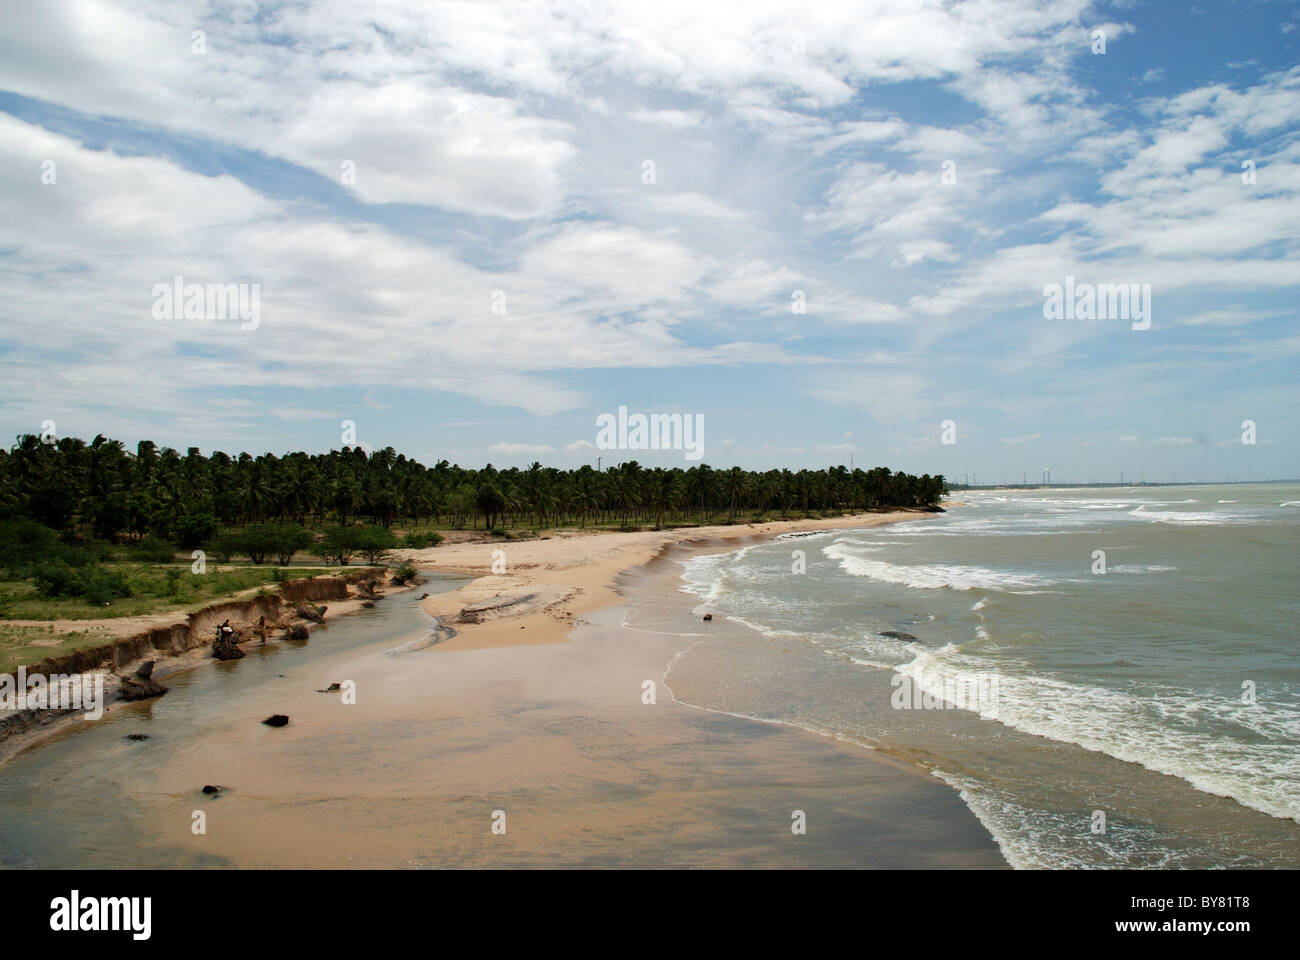 beautiful view of beach in vattakottai,kanyakumari,tamilnadu,india,asia Stock Photo